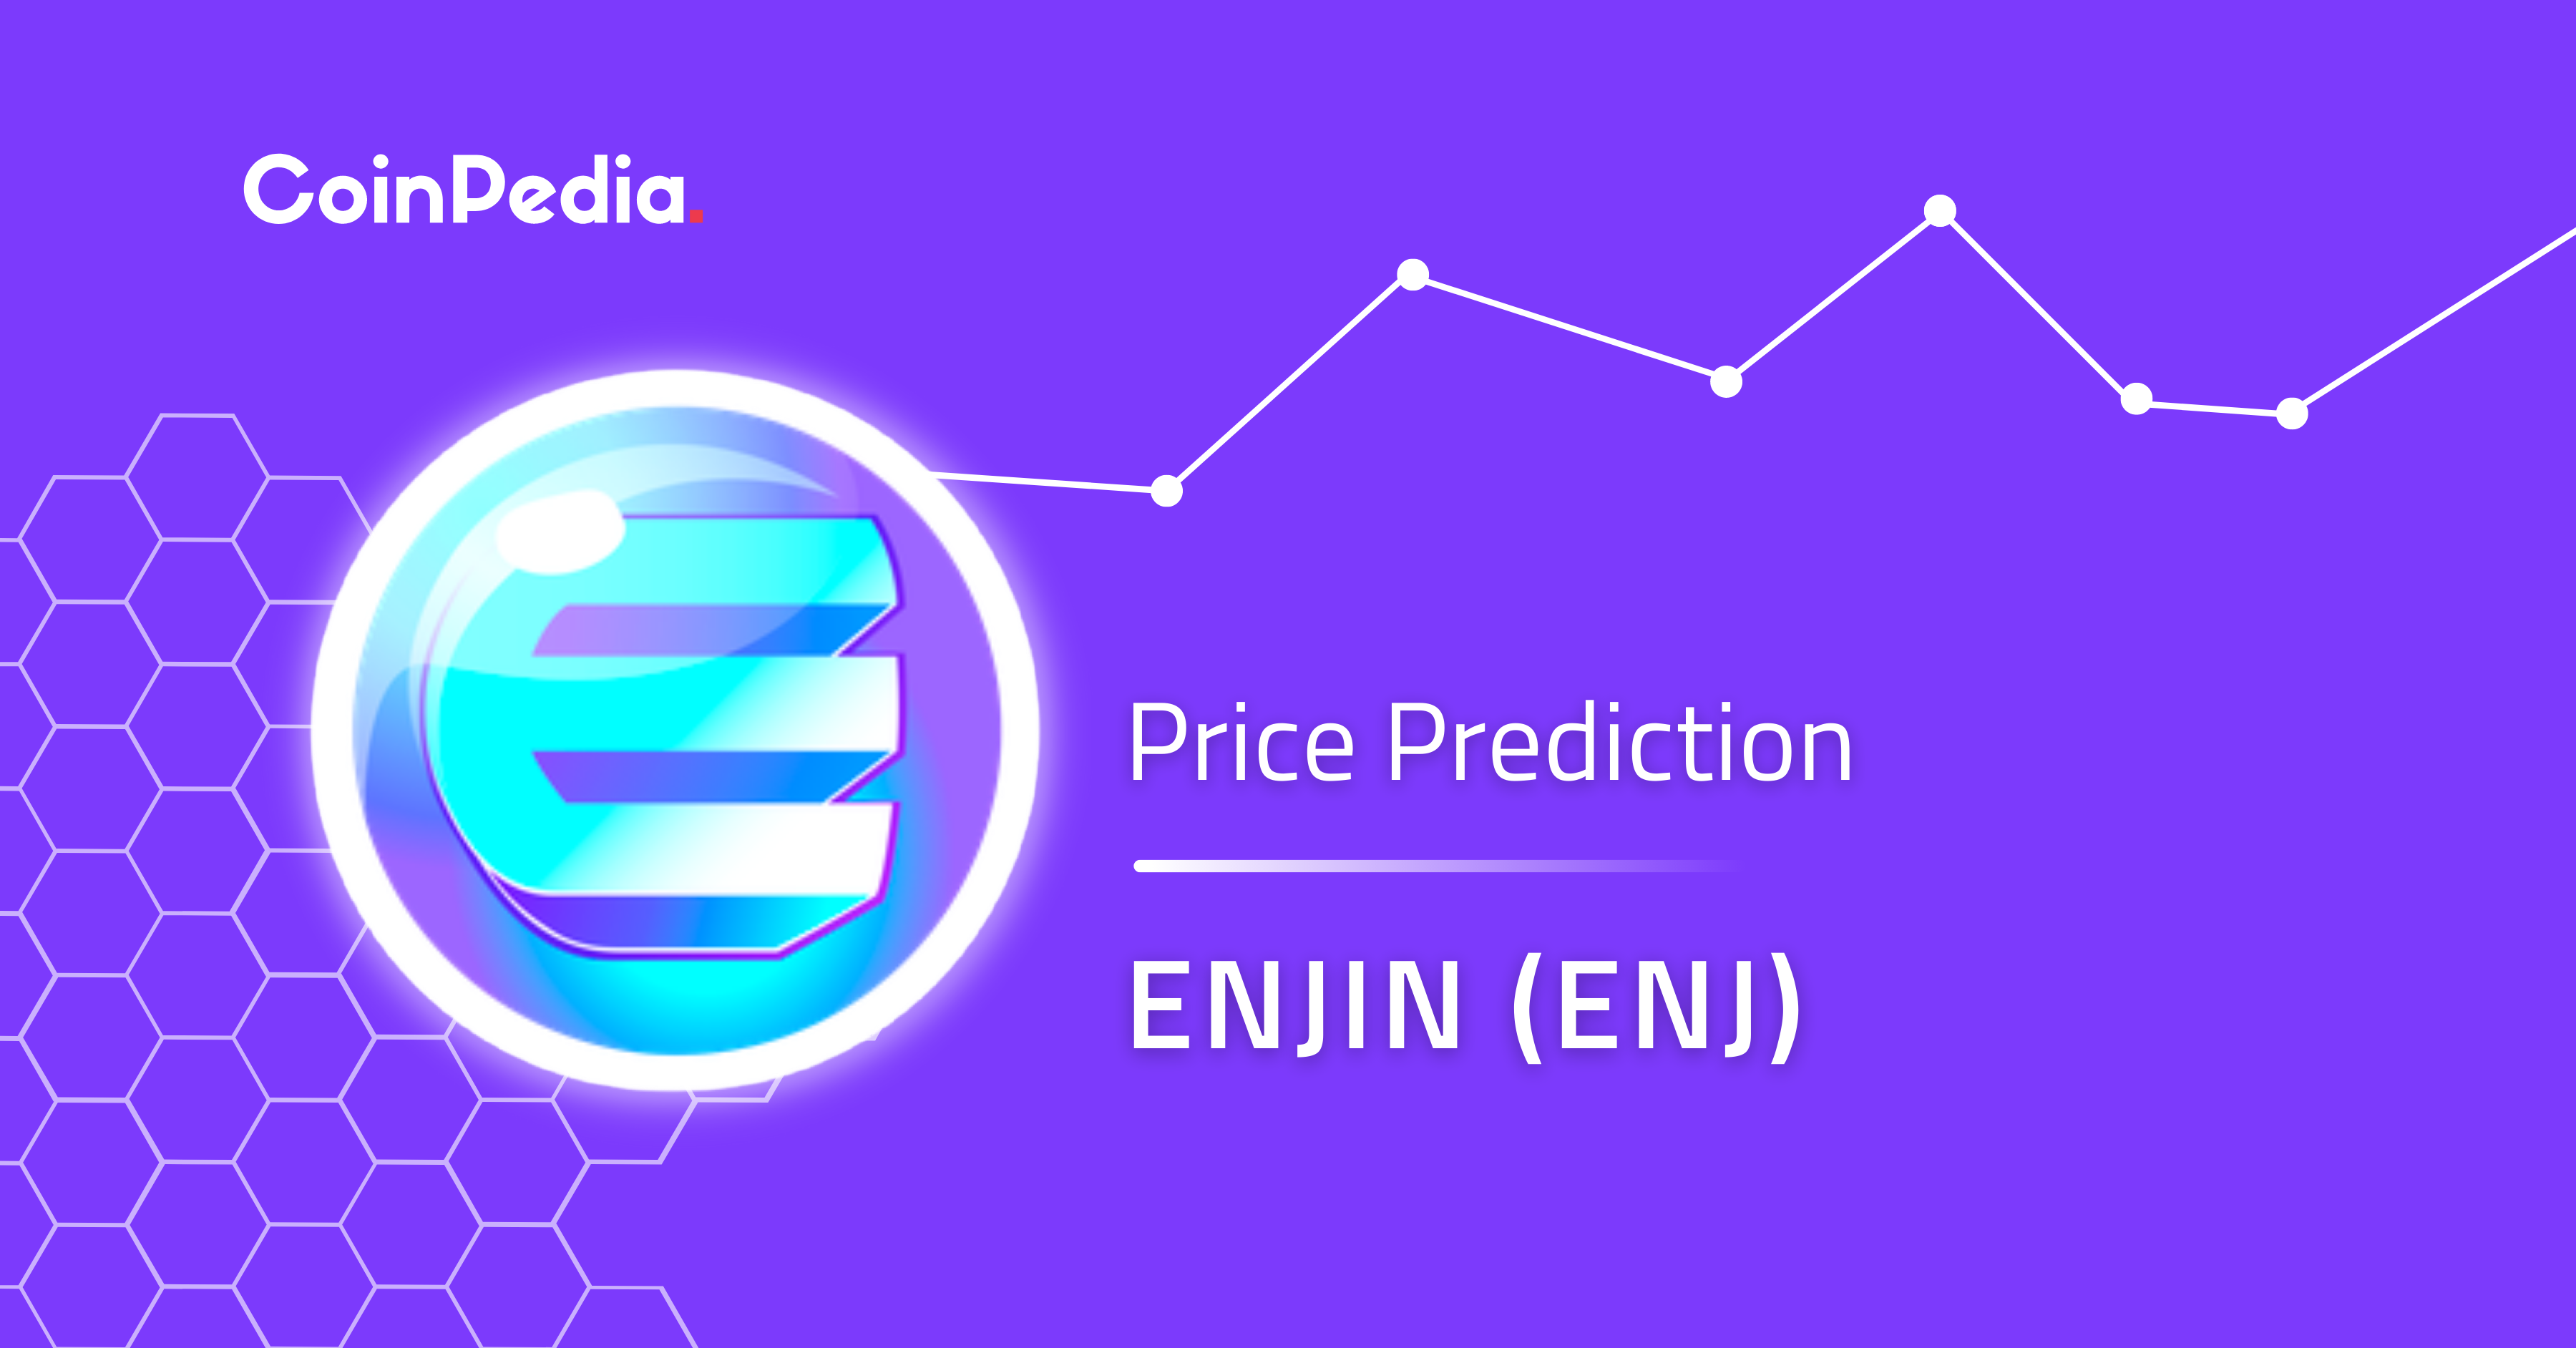 enjin coin crypto price prediction